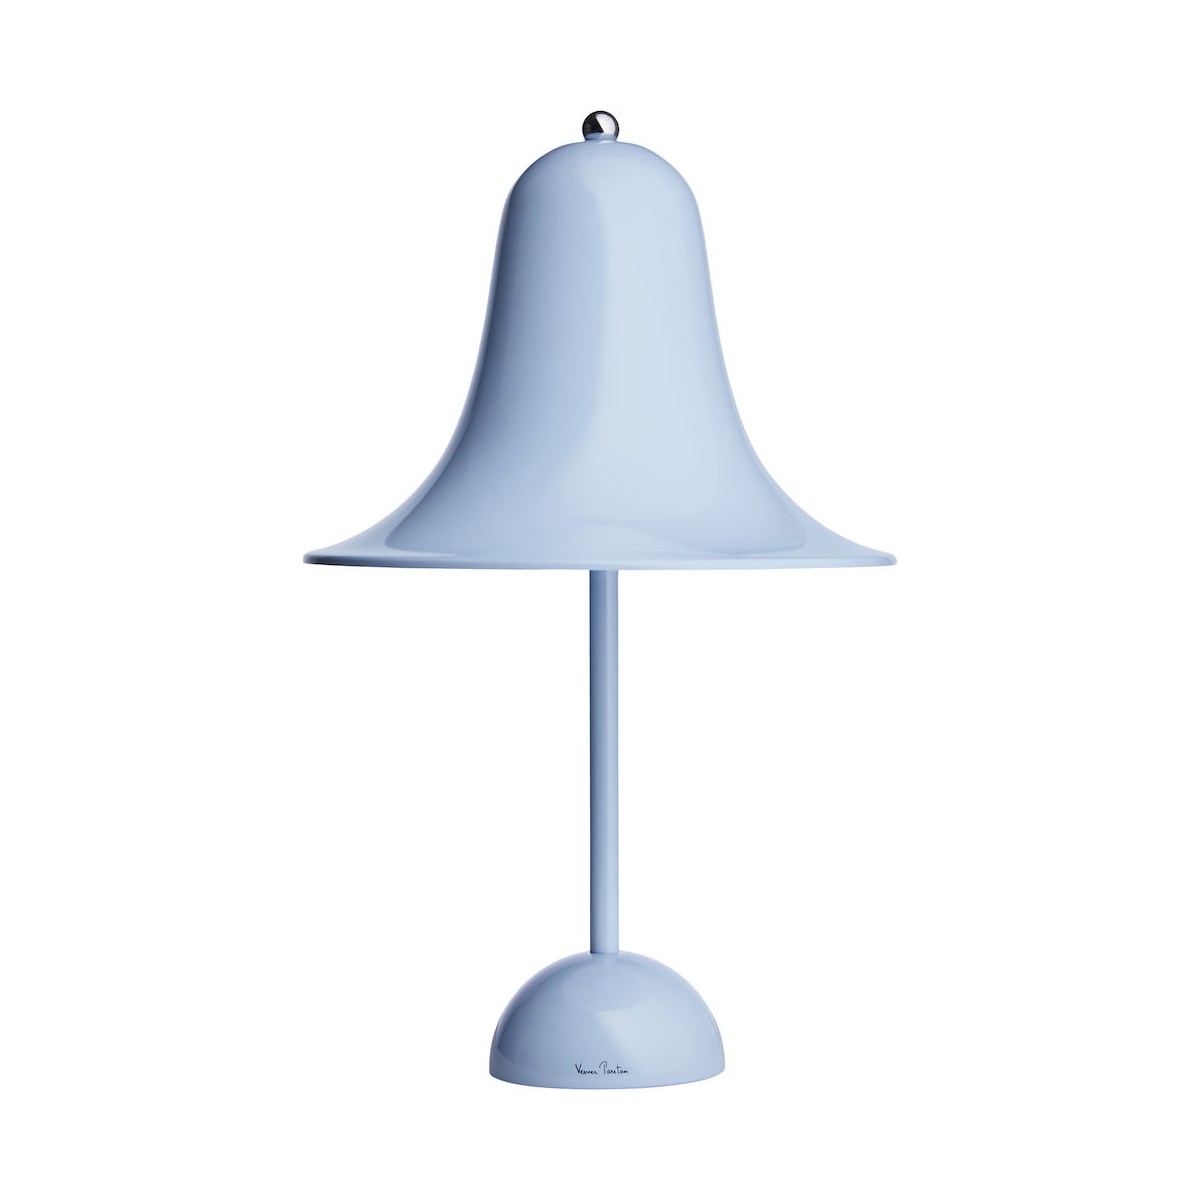 DARROUX - 50% - bleu clair - lampe de table Pantop